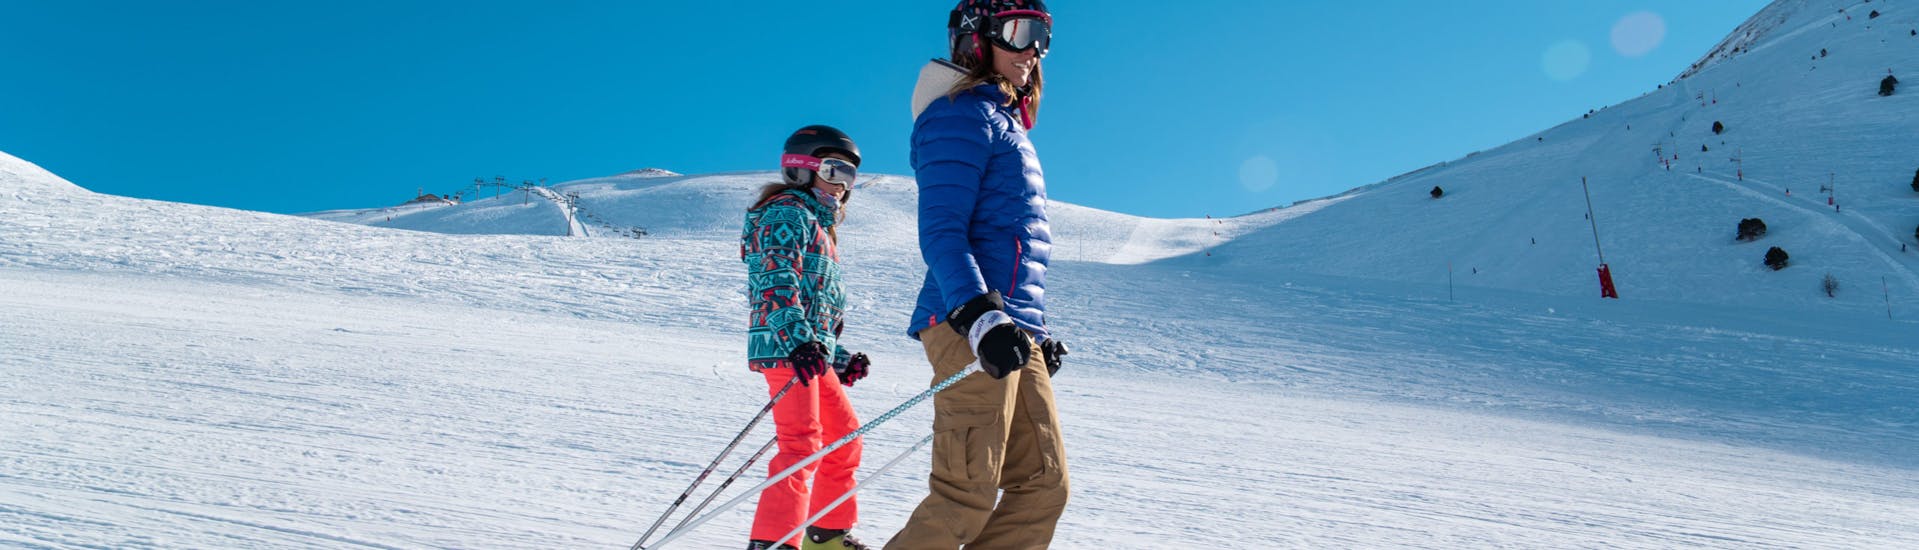 Kinder-Skikurs ab 5 Jahren für Anfänger mit Evolution 2 Saint Lary Soulan.